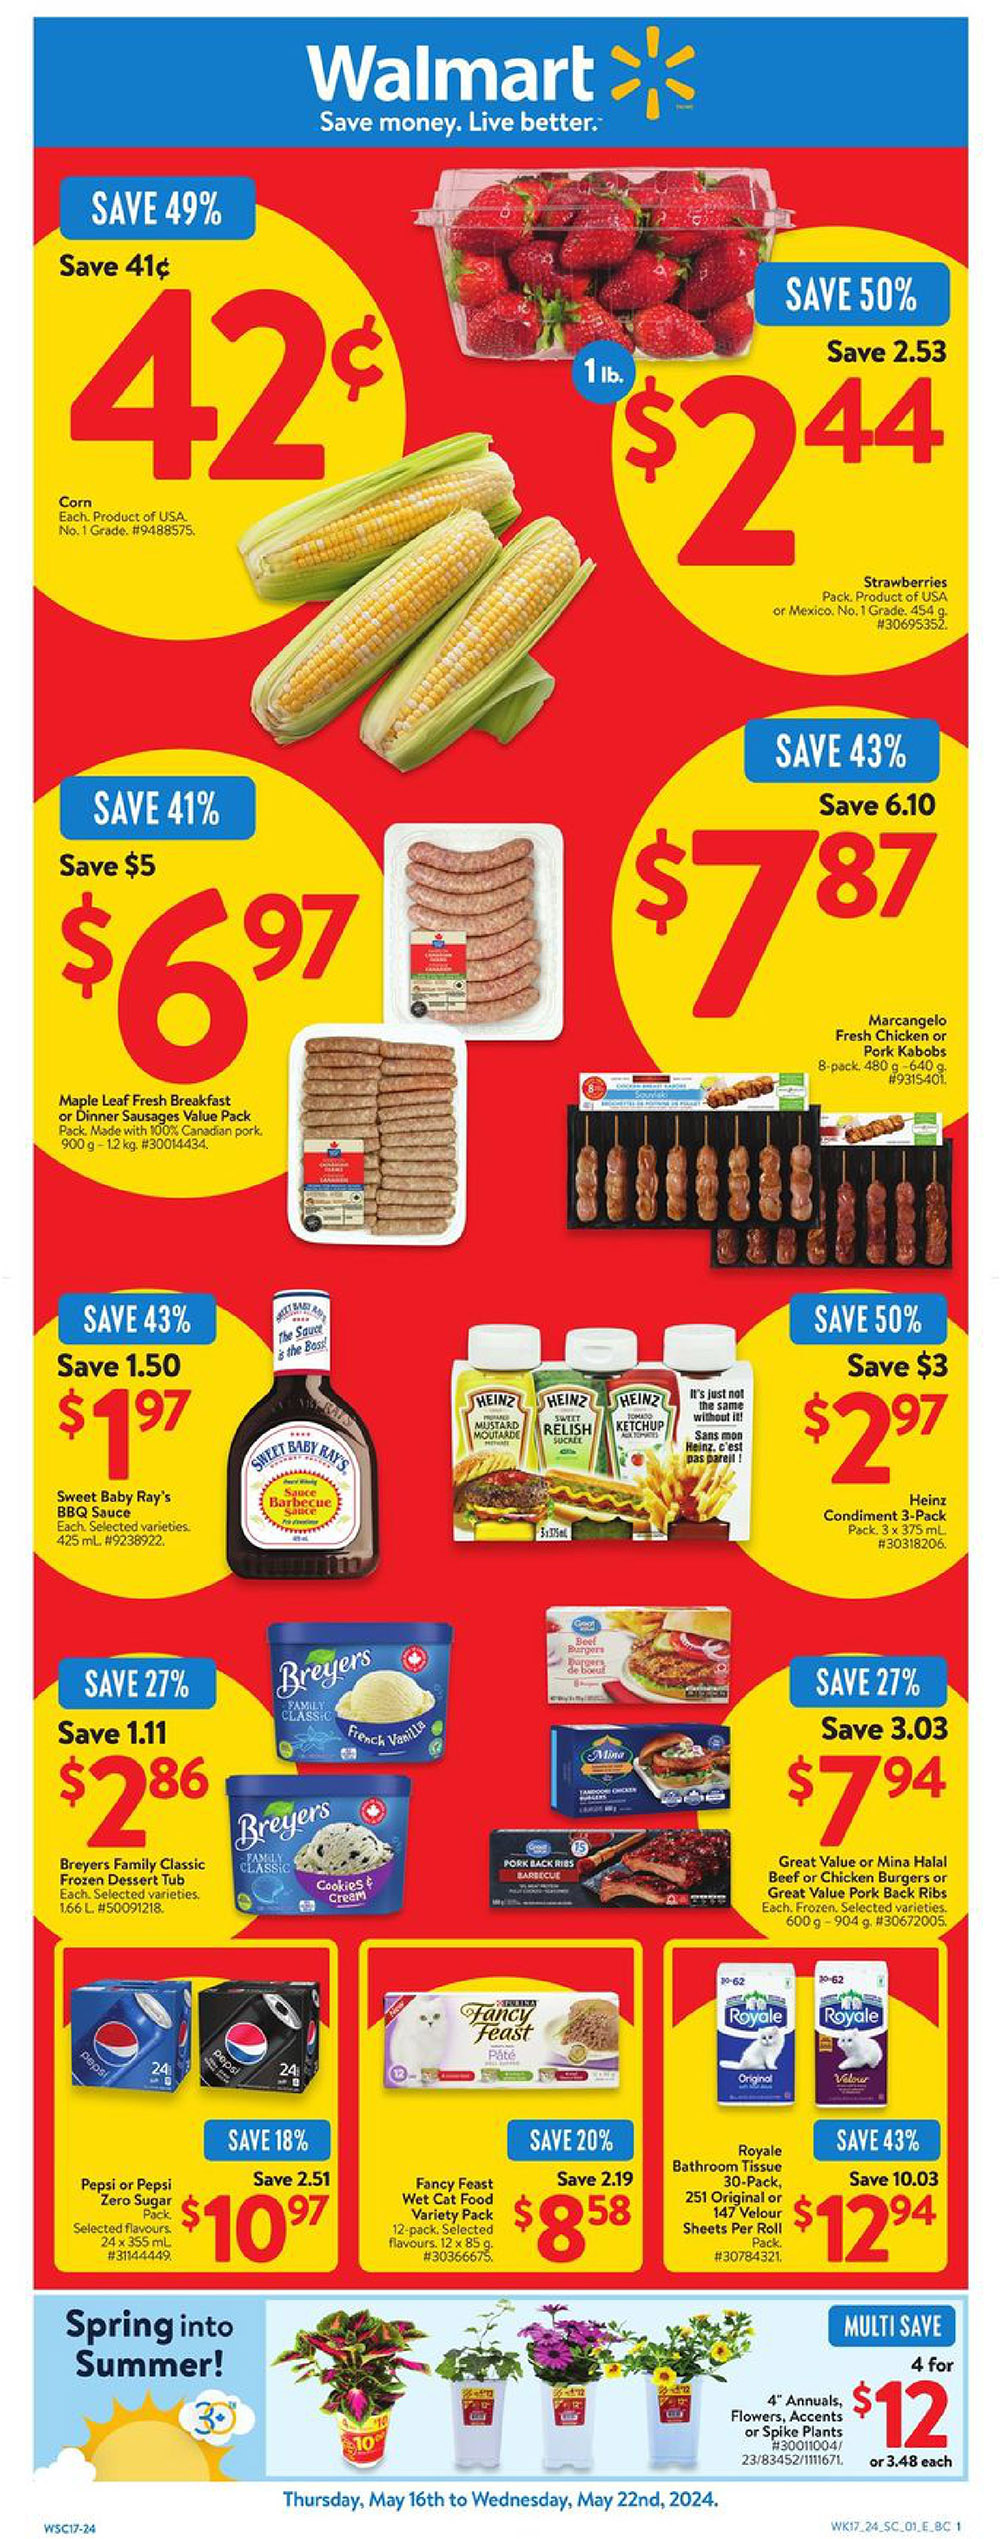 Walmart Canada - Western Canada - Weekly Flyer Specials